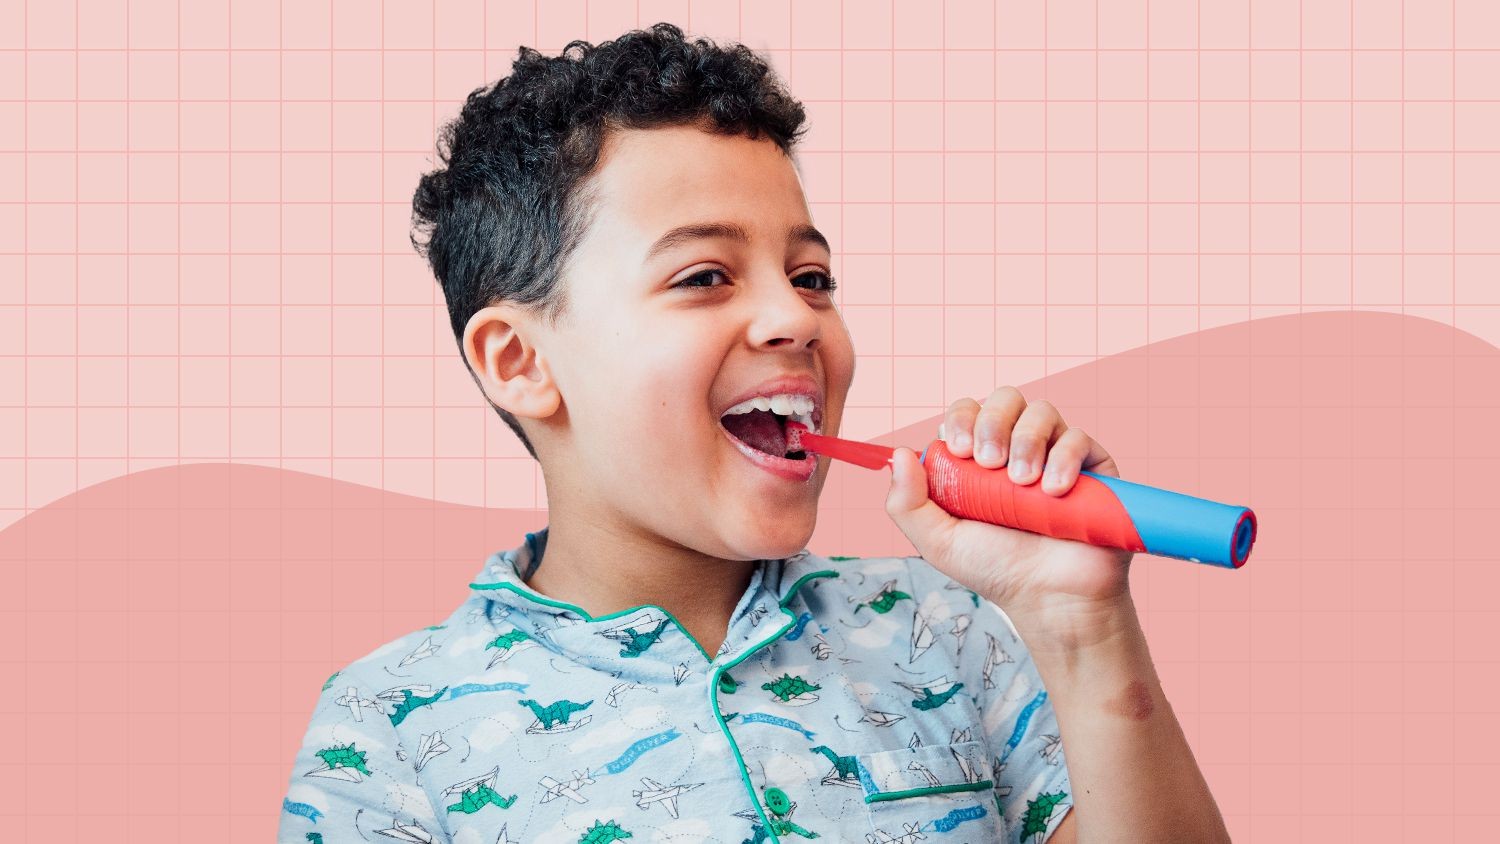 Kids Electric Toothbrush Market